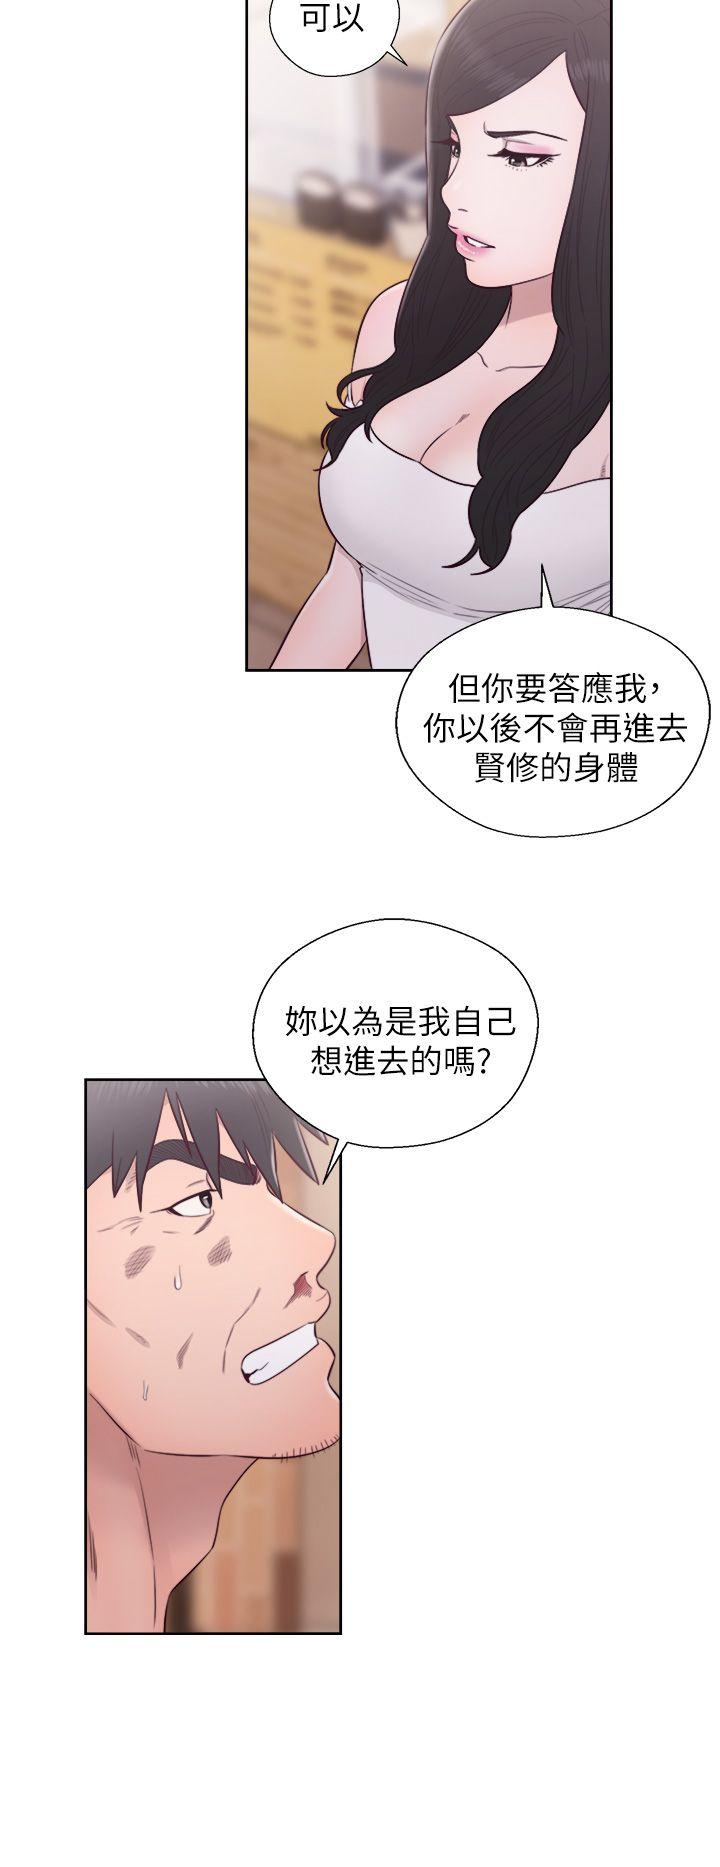 青春:逆龄小鲜肉  最终话 漫画图片23.jpg